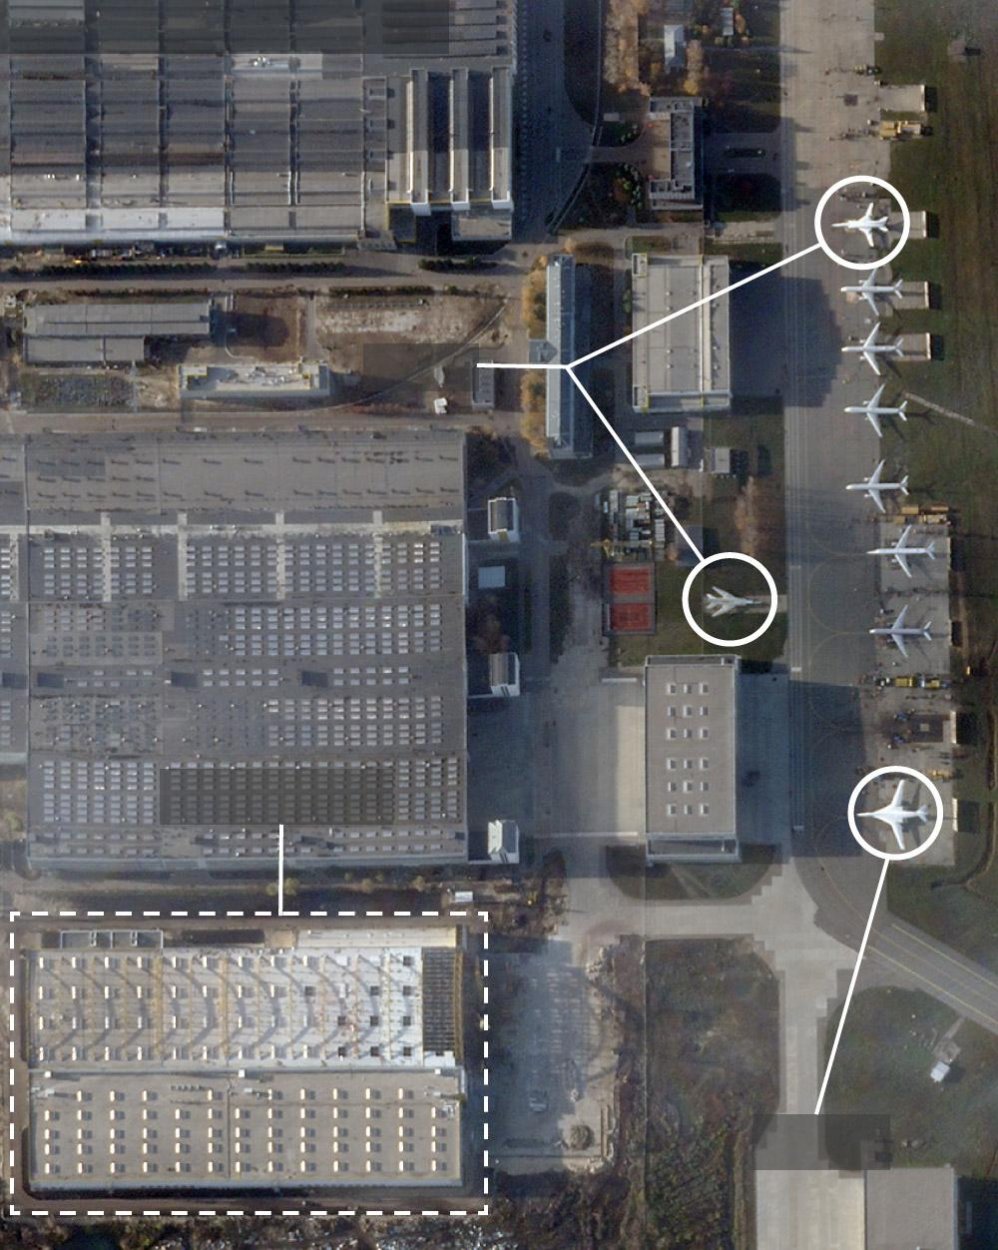 Moskva navyšuje kapacity na výrobu zbraní, naznačujú satelitné zábery